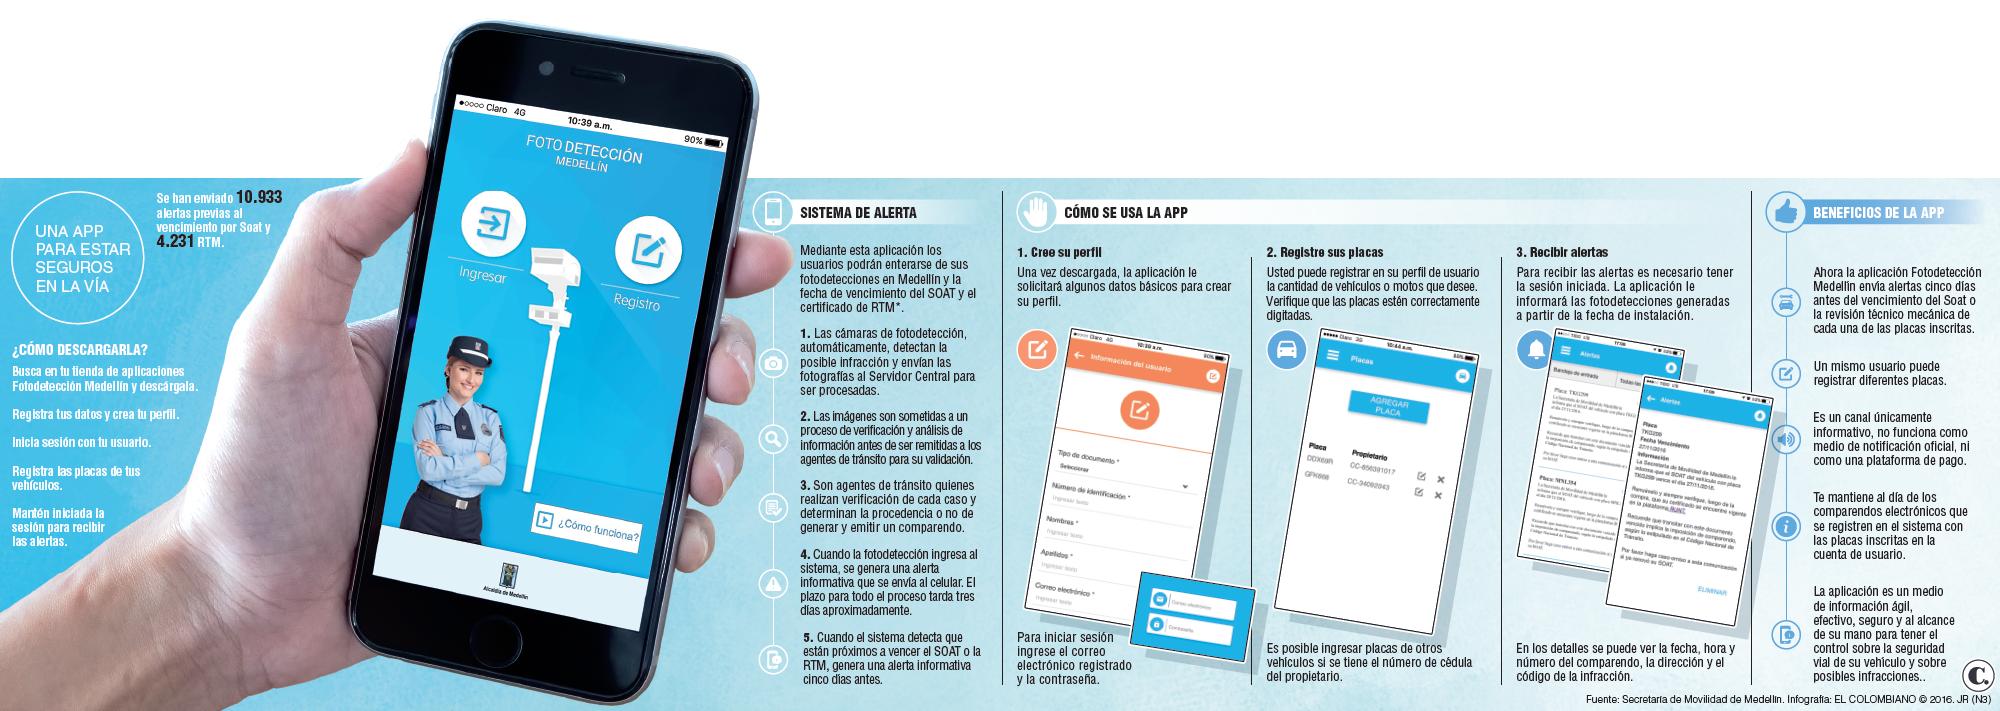 App móvil de la Secretaría de Movilidad, una ayuda para la memoria